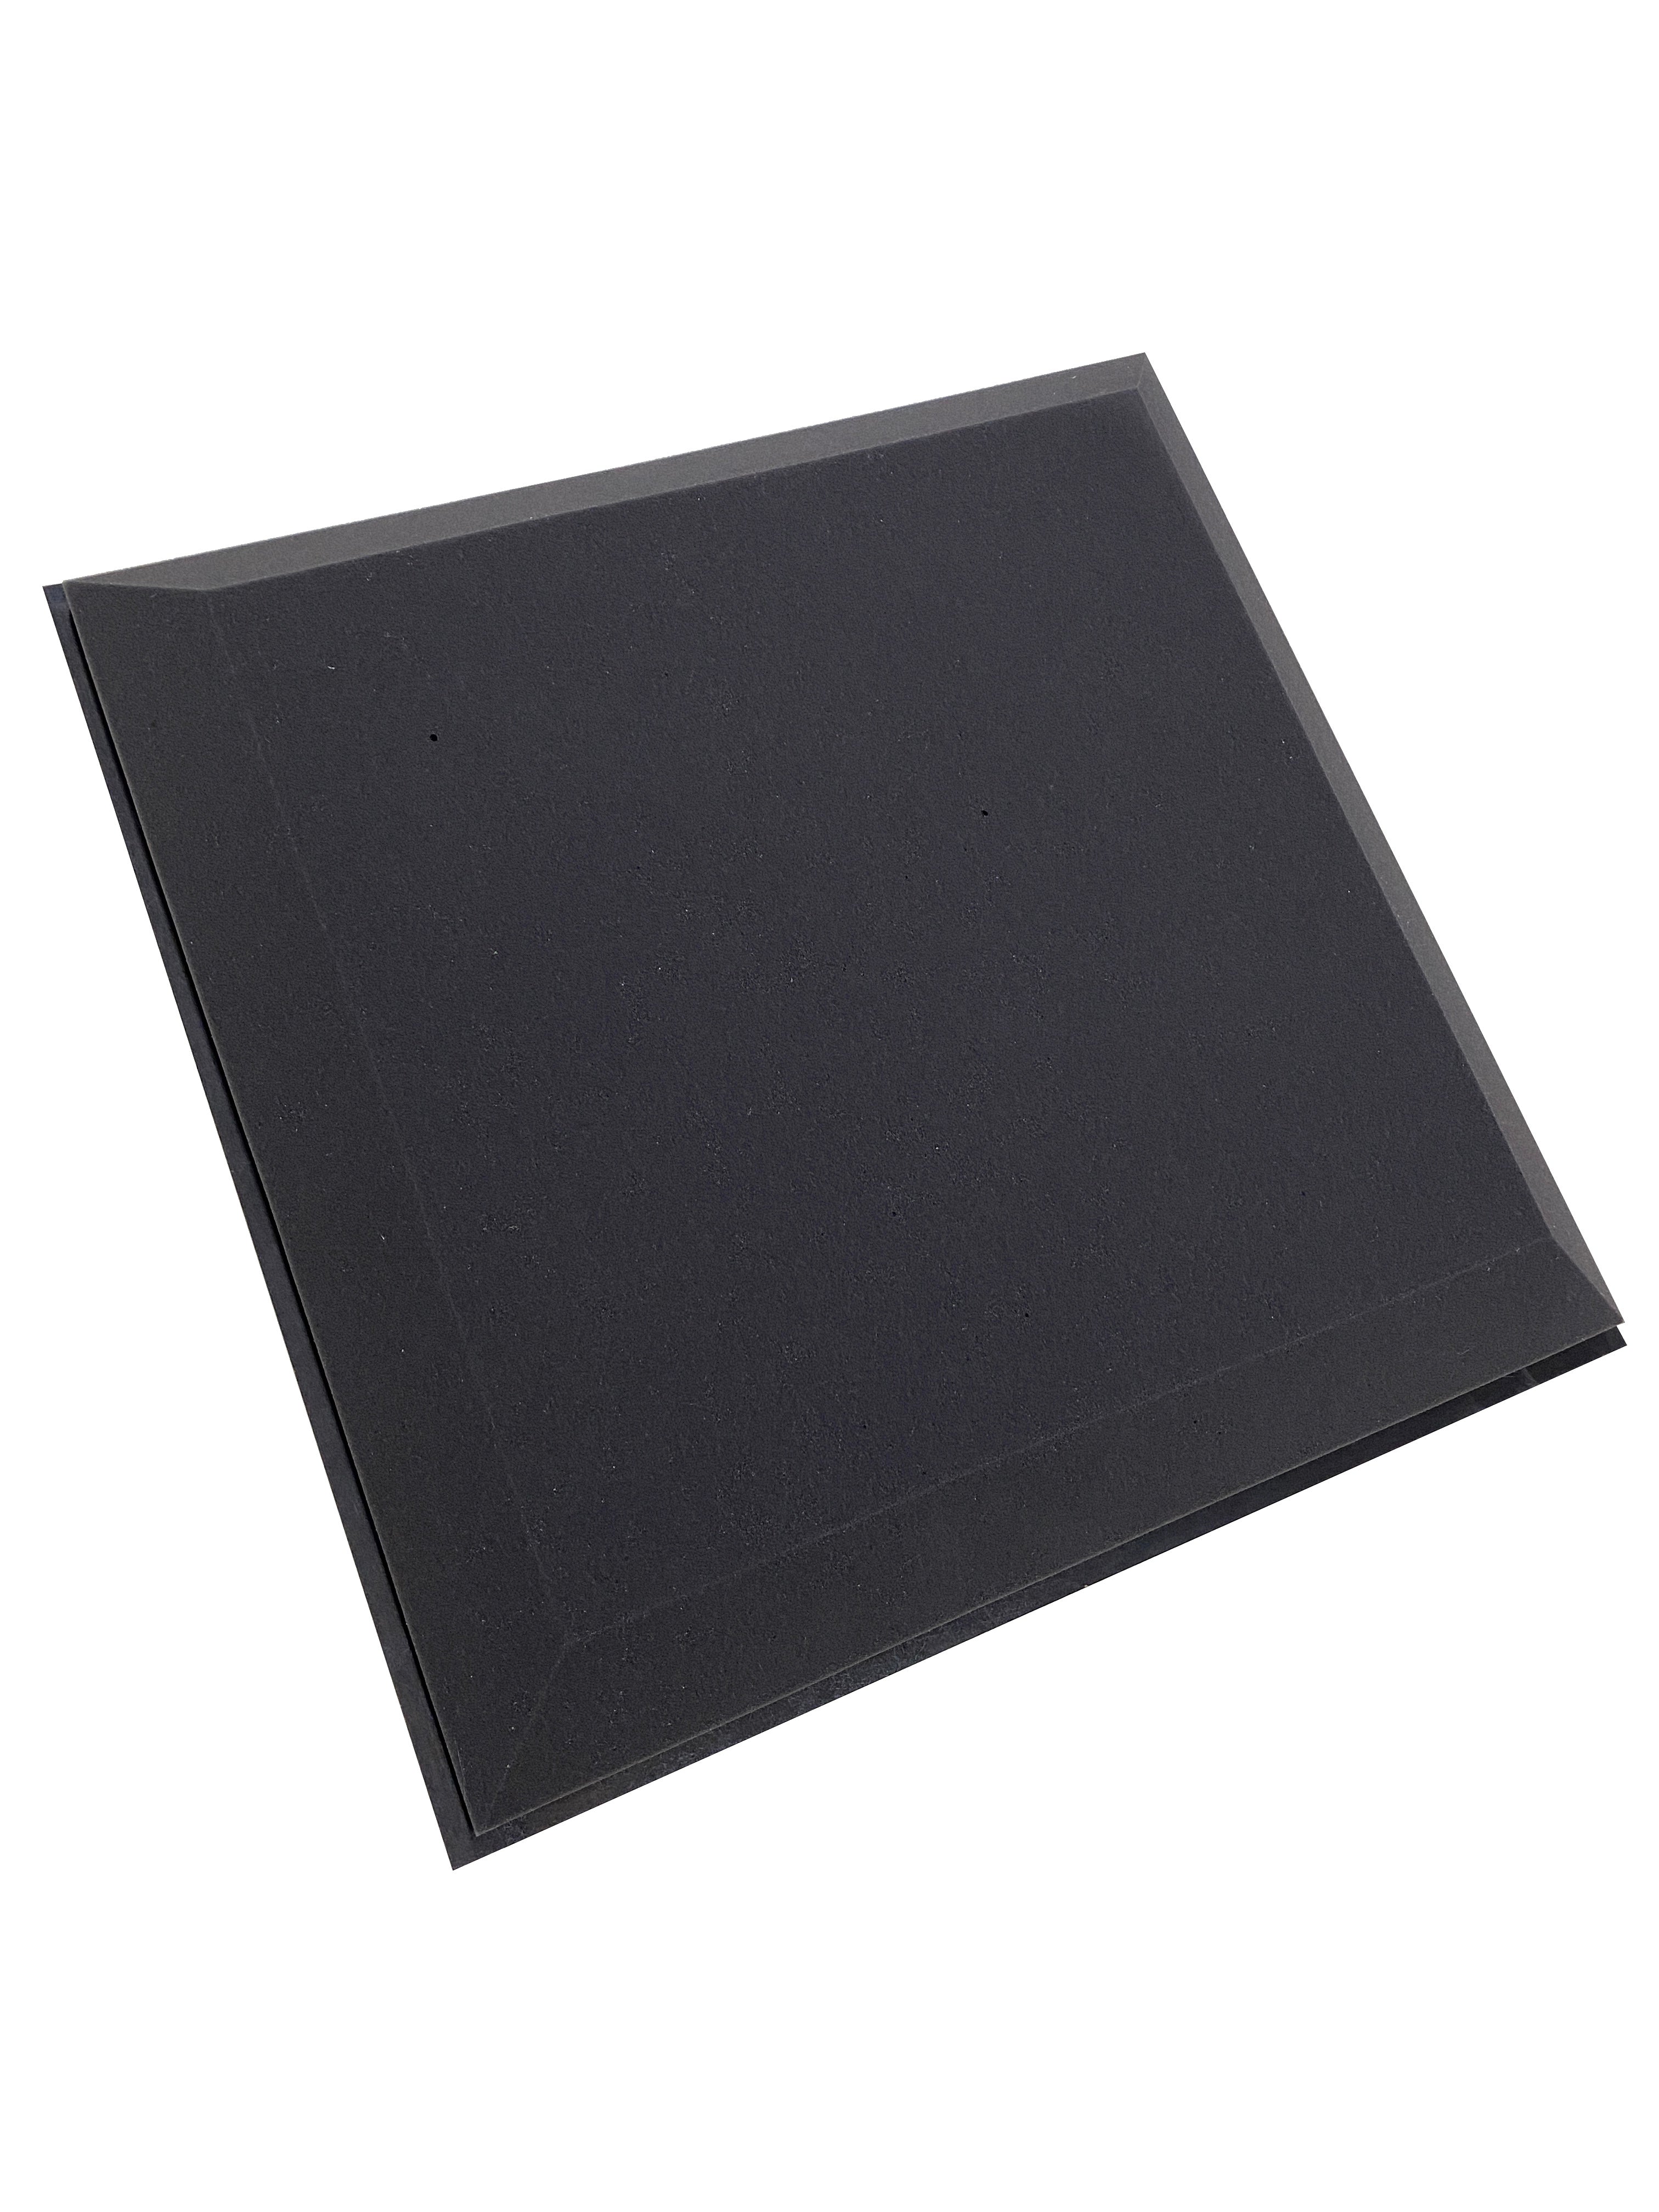 Kaufen dunkelgrau Tegular 7,6 cm Studio-Akustik-Fliesenpaket für abgehängte Decken – 6 Fliesen, 2,16 m² Abdeckung